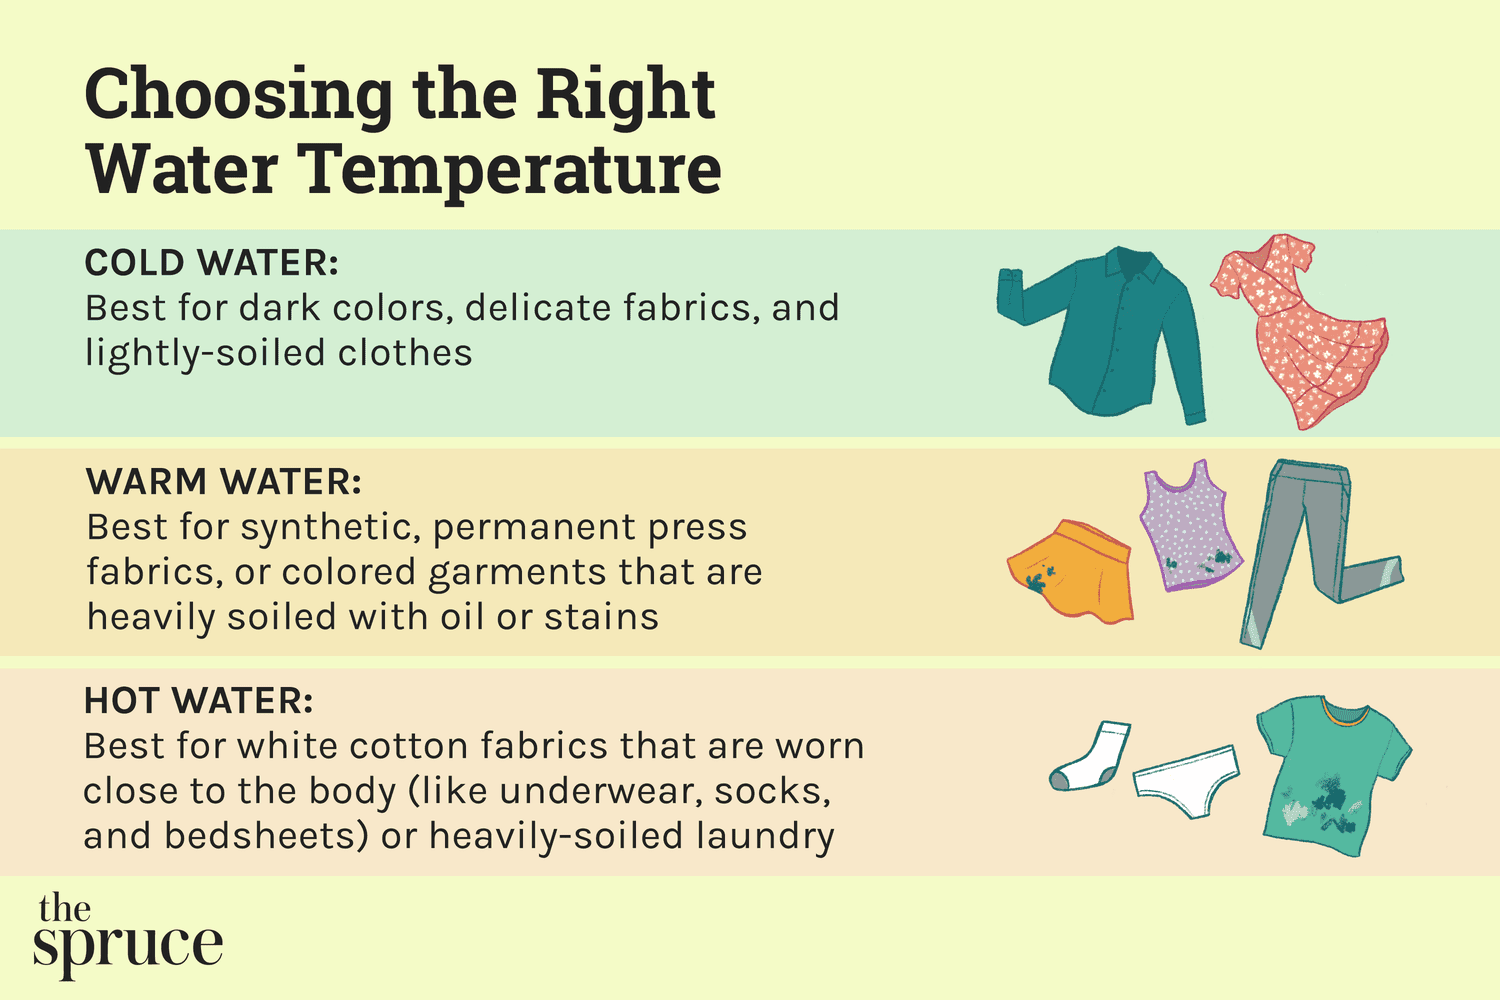 Die Wahl der richtigen Wassertemperatur für die Wäsche